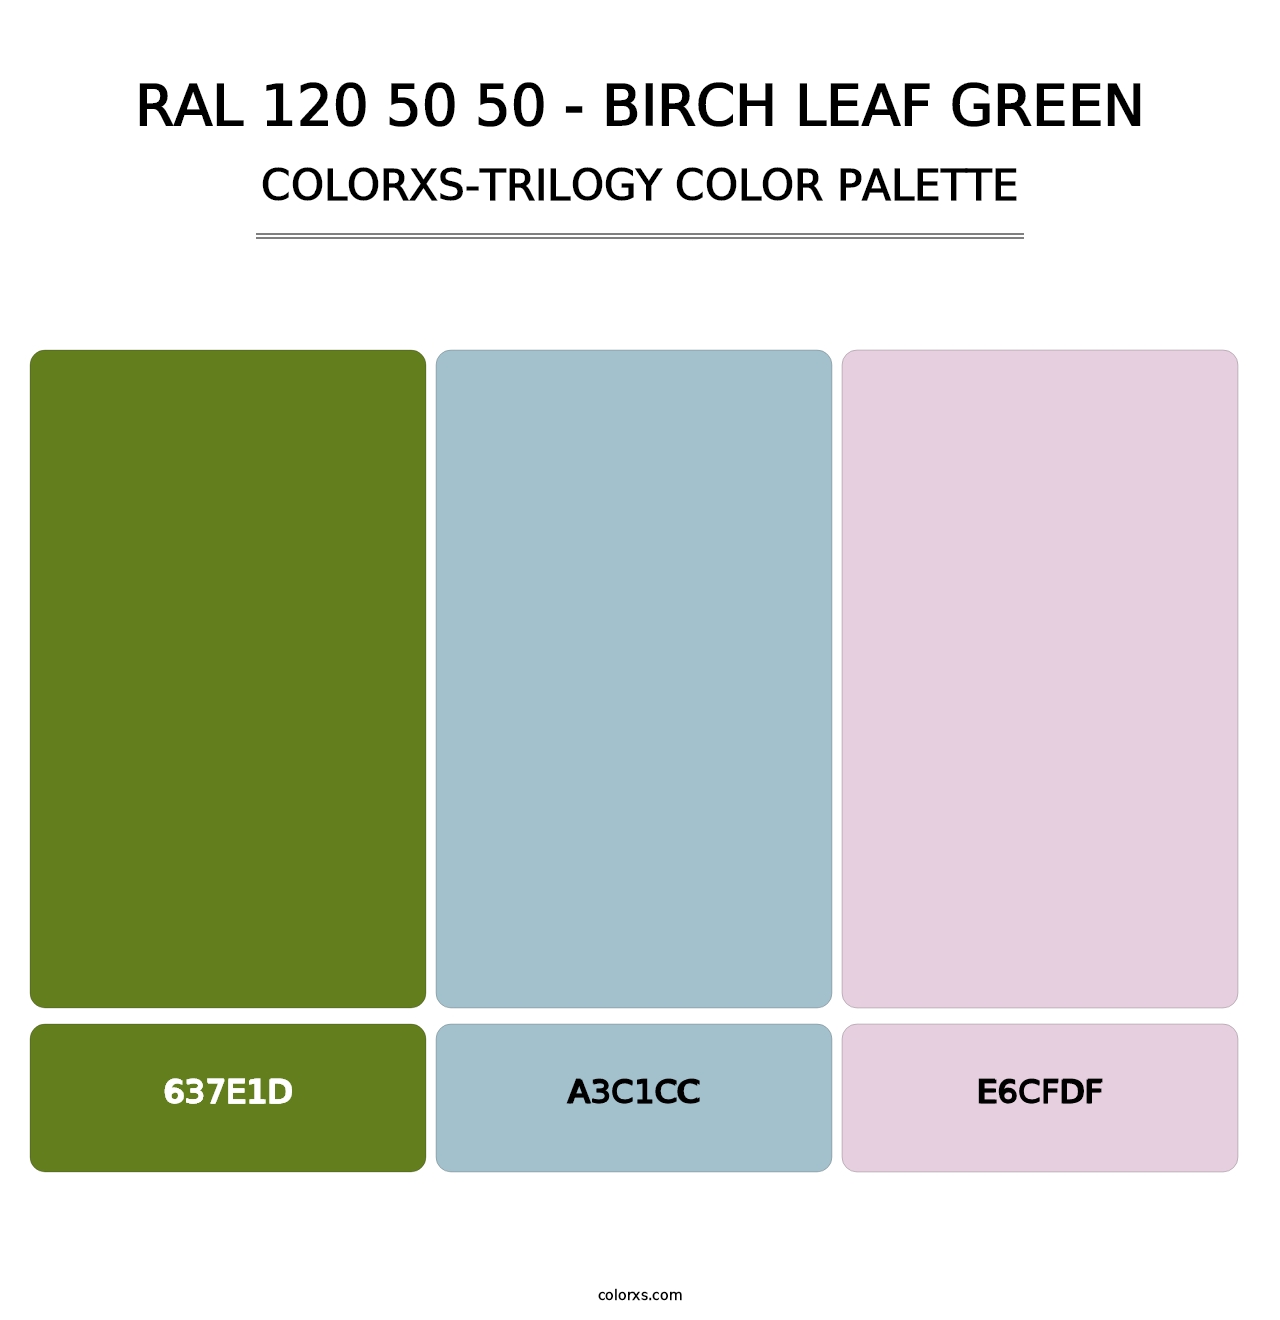 RAL 120 50 50 - Birch Leaf Green - Colorxs Trilogy Palette